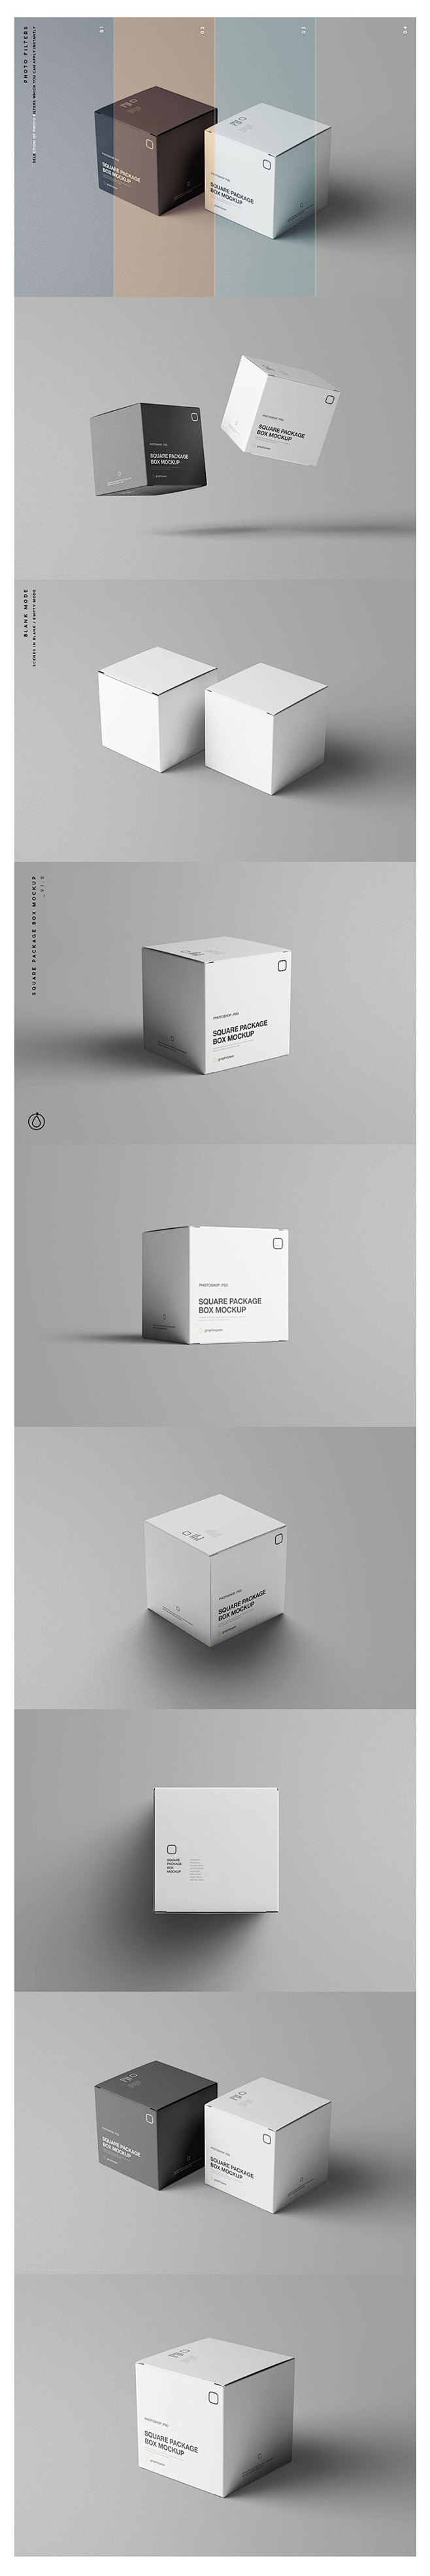 高端立体正方形包装盒盒子设计品牌VI样机...